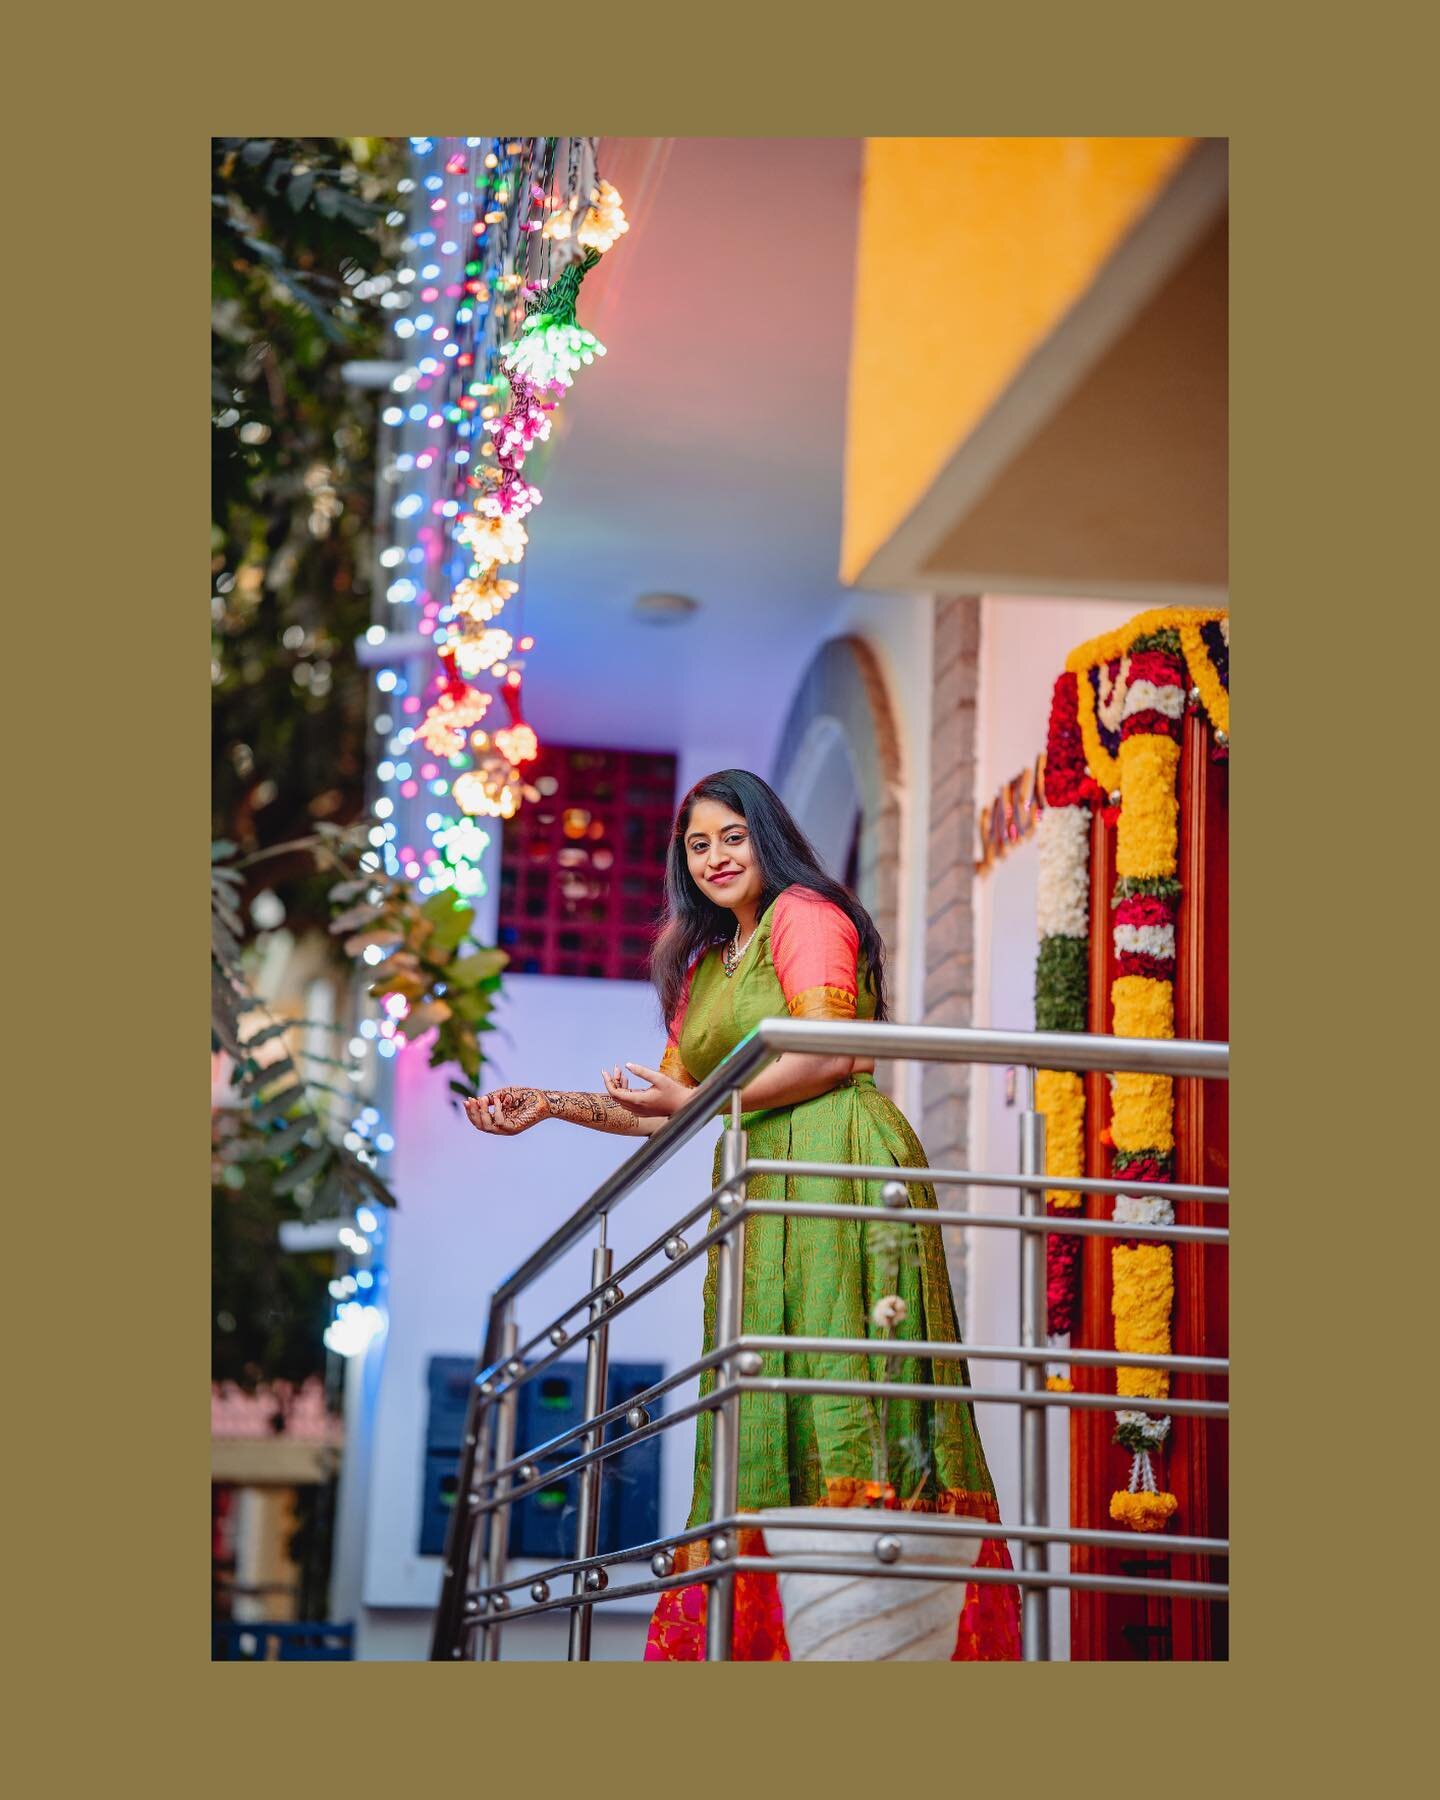 Happy moments of this beautiful bride 📸
.
In frame
Bride: @spurthi_patil 
.
#bridalshoot #bridetobe #mehendiphotography #capturingemotions #bangalorephotographer